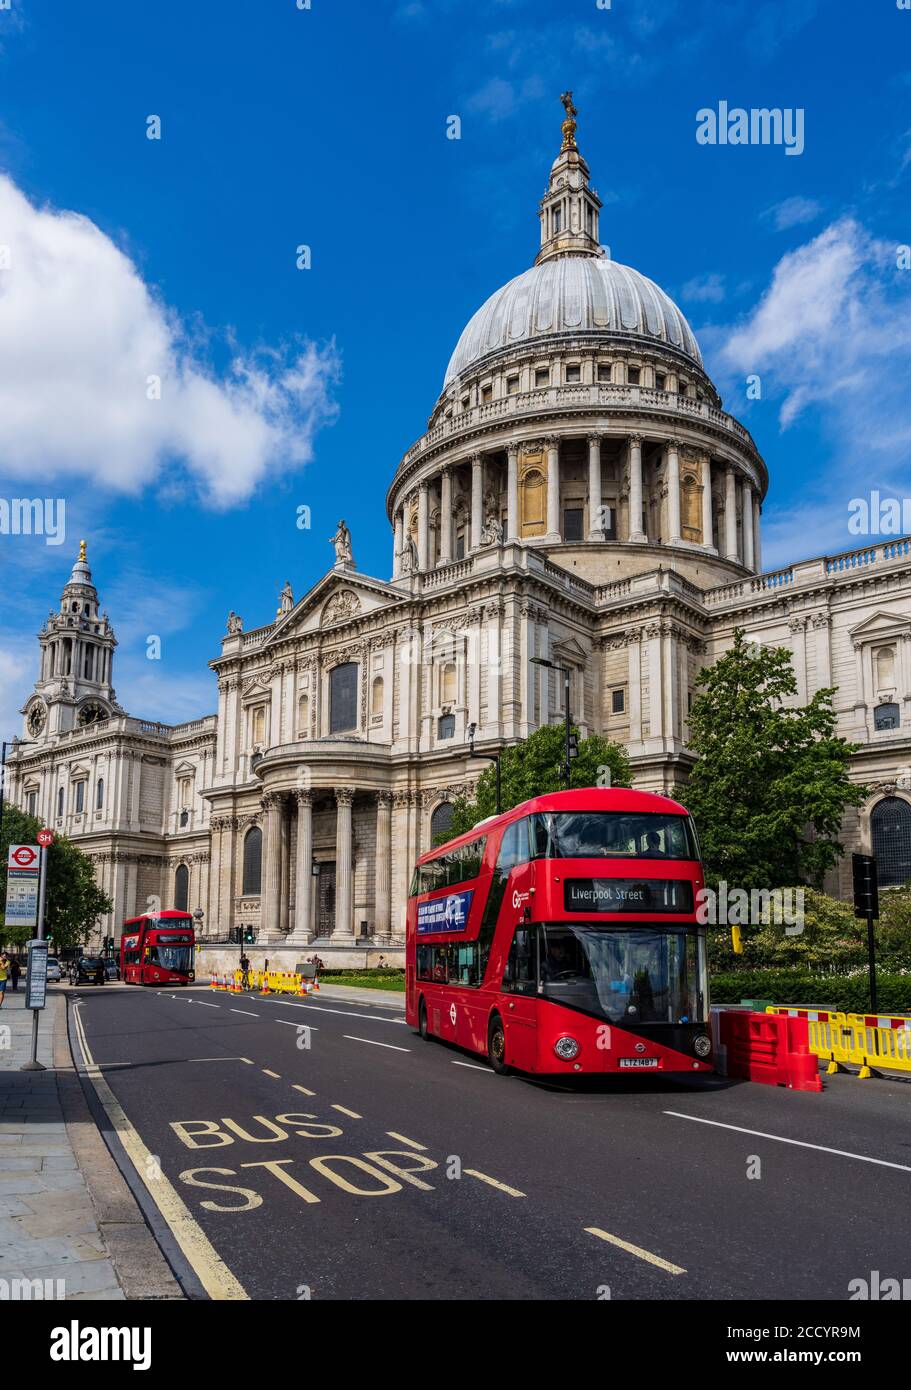 St Paul's Cathedral London - un autobus di Londra passa davanti all'iconica Cattedrale di St Paul's London UK - l'architetto Christopher Wren ha iniziato 1675 consacrati nel 1697. Foto Stock